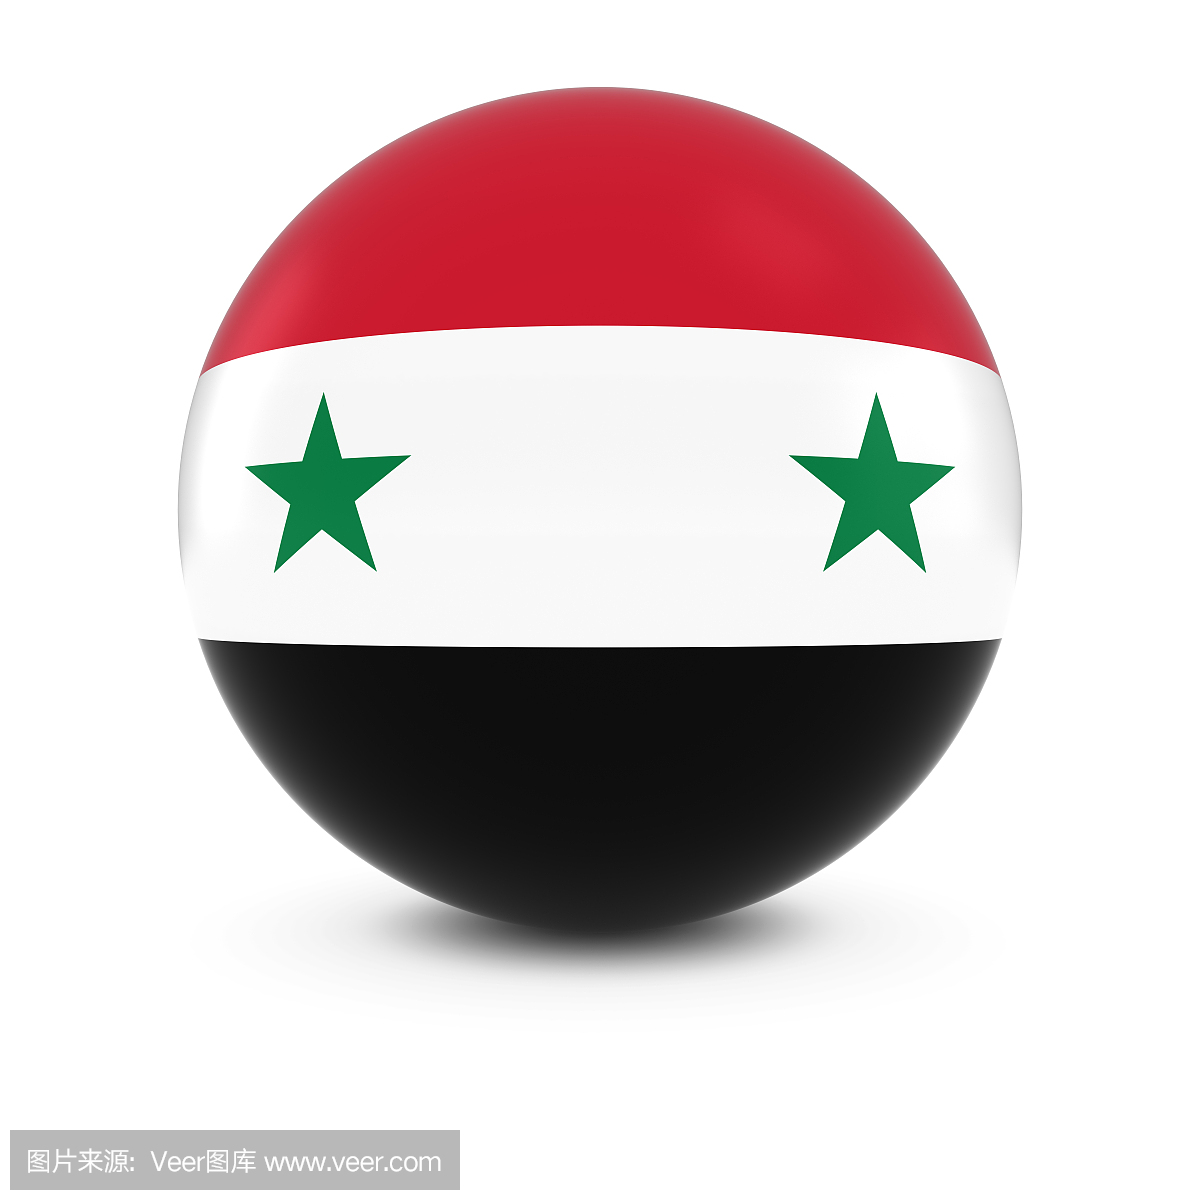 叙利亚国旗球 - 叙利亚国旗在孤立的球体上